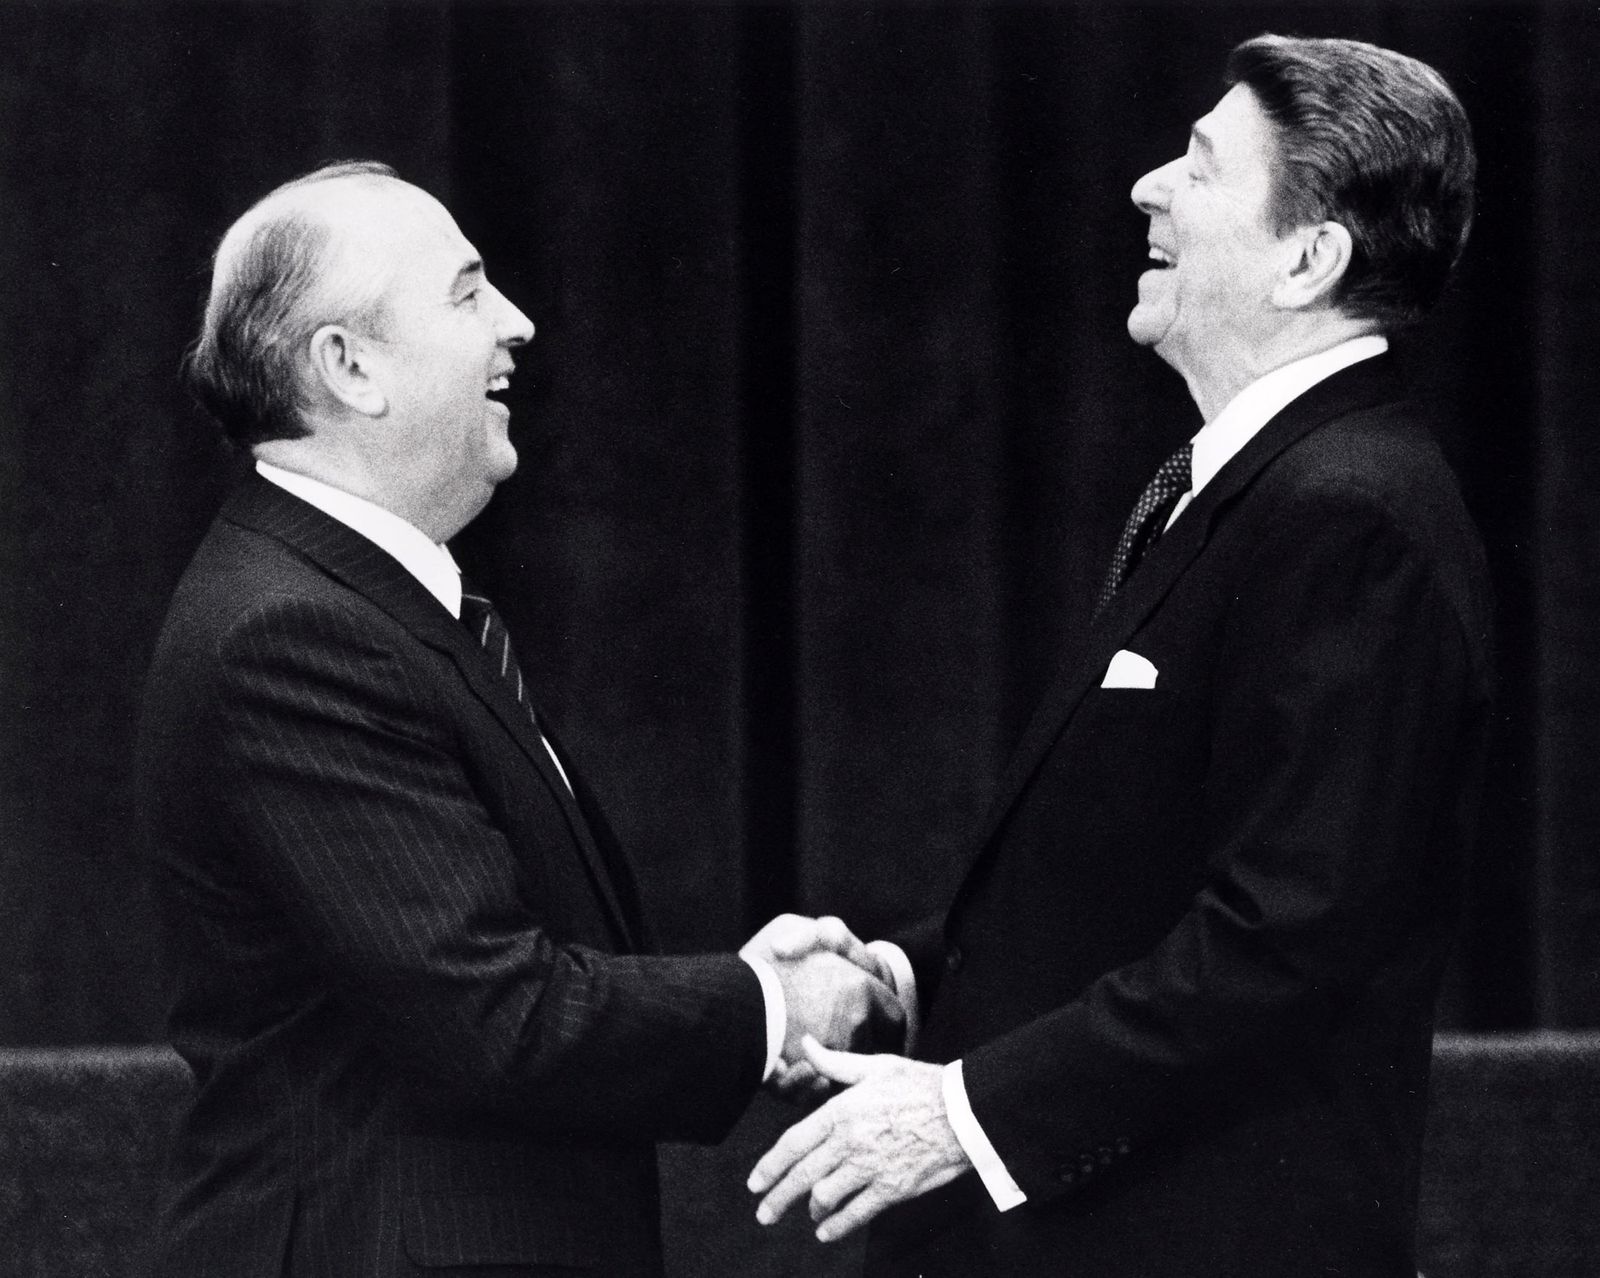 الرئيس الأميركي السابق رونالد ريجان والزعيم السوفيتي السابق ميخائيل جورباتشوف خلال لقاء في جنيف، سويسرا - REUTERS